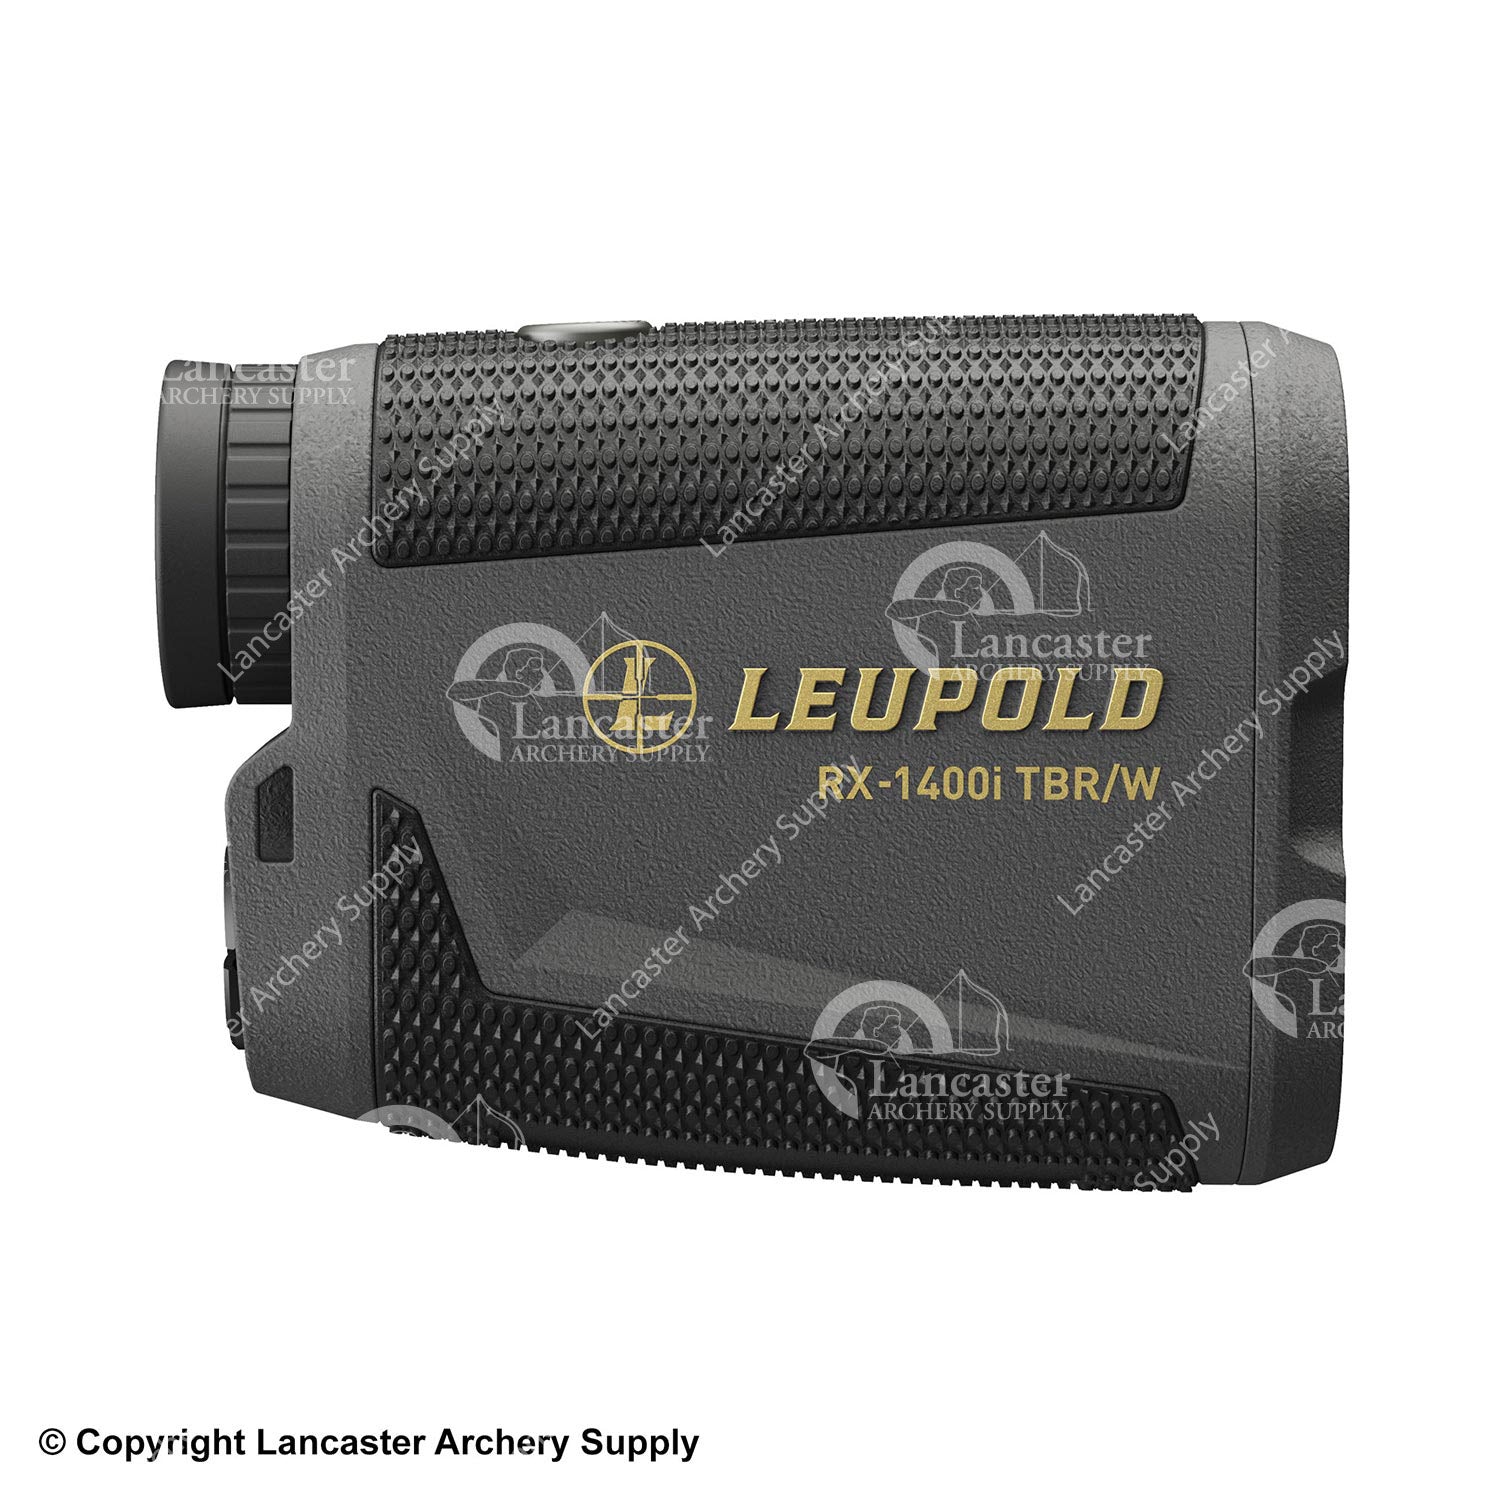 Leupold RX-1400i TBR with DNA Laser Rangefinder